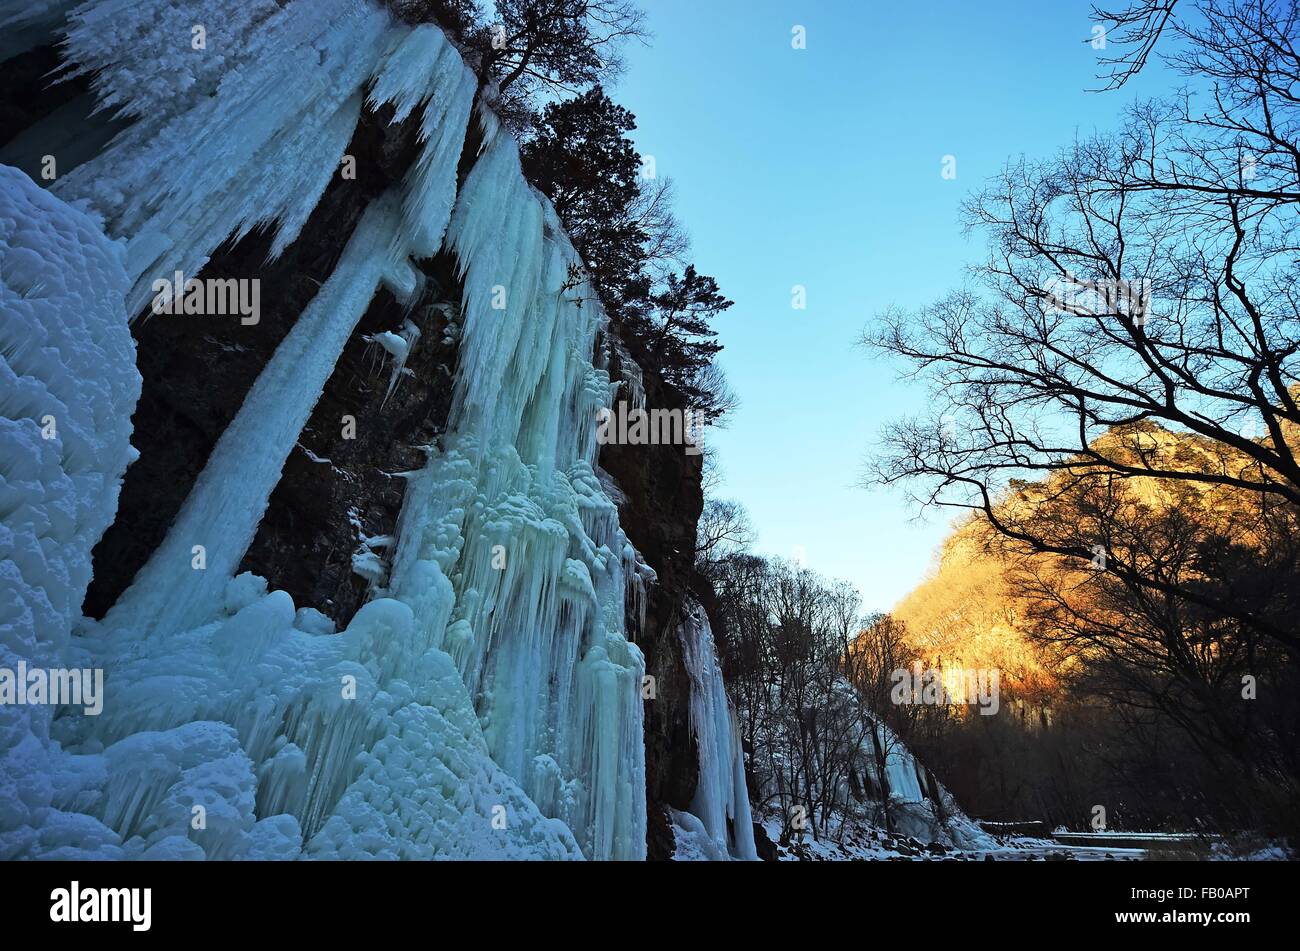 Benxi. 6 janvier, 2016. Photo prise le 6 janvier 2016 montre les paysages de cascades de glace à l'Guanmen Mountain scenic spot à Shenyang City, Liaoning Province du nord-est de la Chine. Cascades de glace ici a attiré un bon nombre de touristes. Crédit : Yang Qing/Xinhua/Alamy Live News Banque D'Images